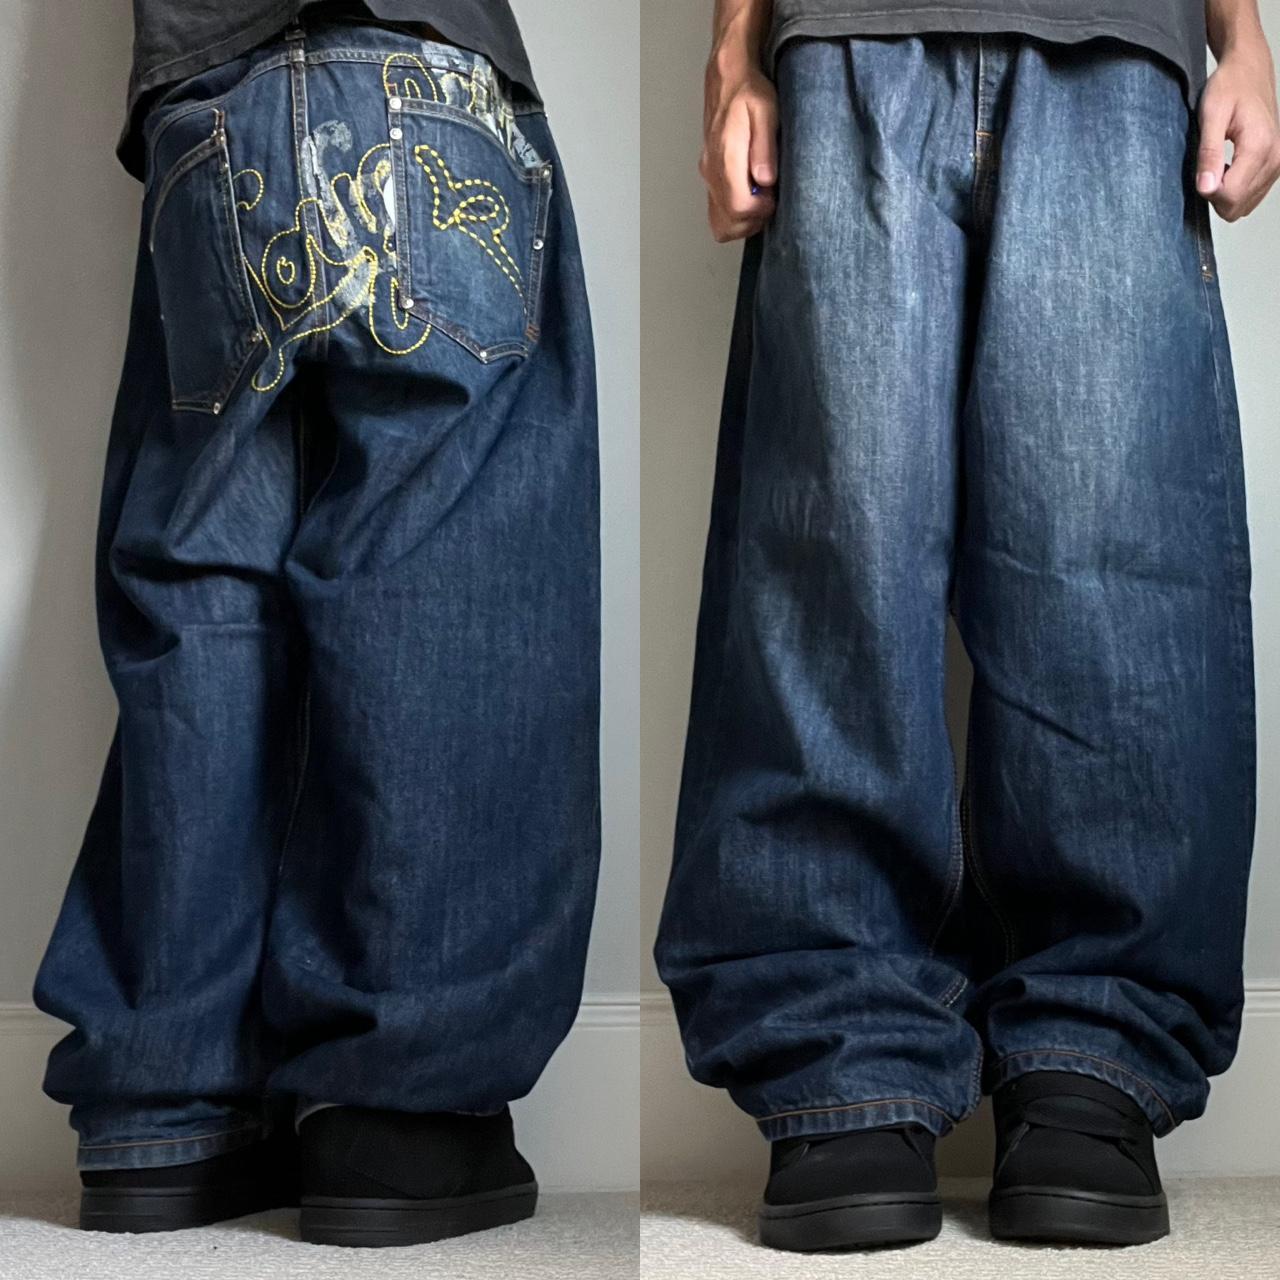 y2k grunge skater baggy rocawear jeans size 38 - Depop